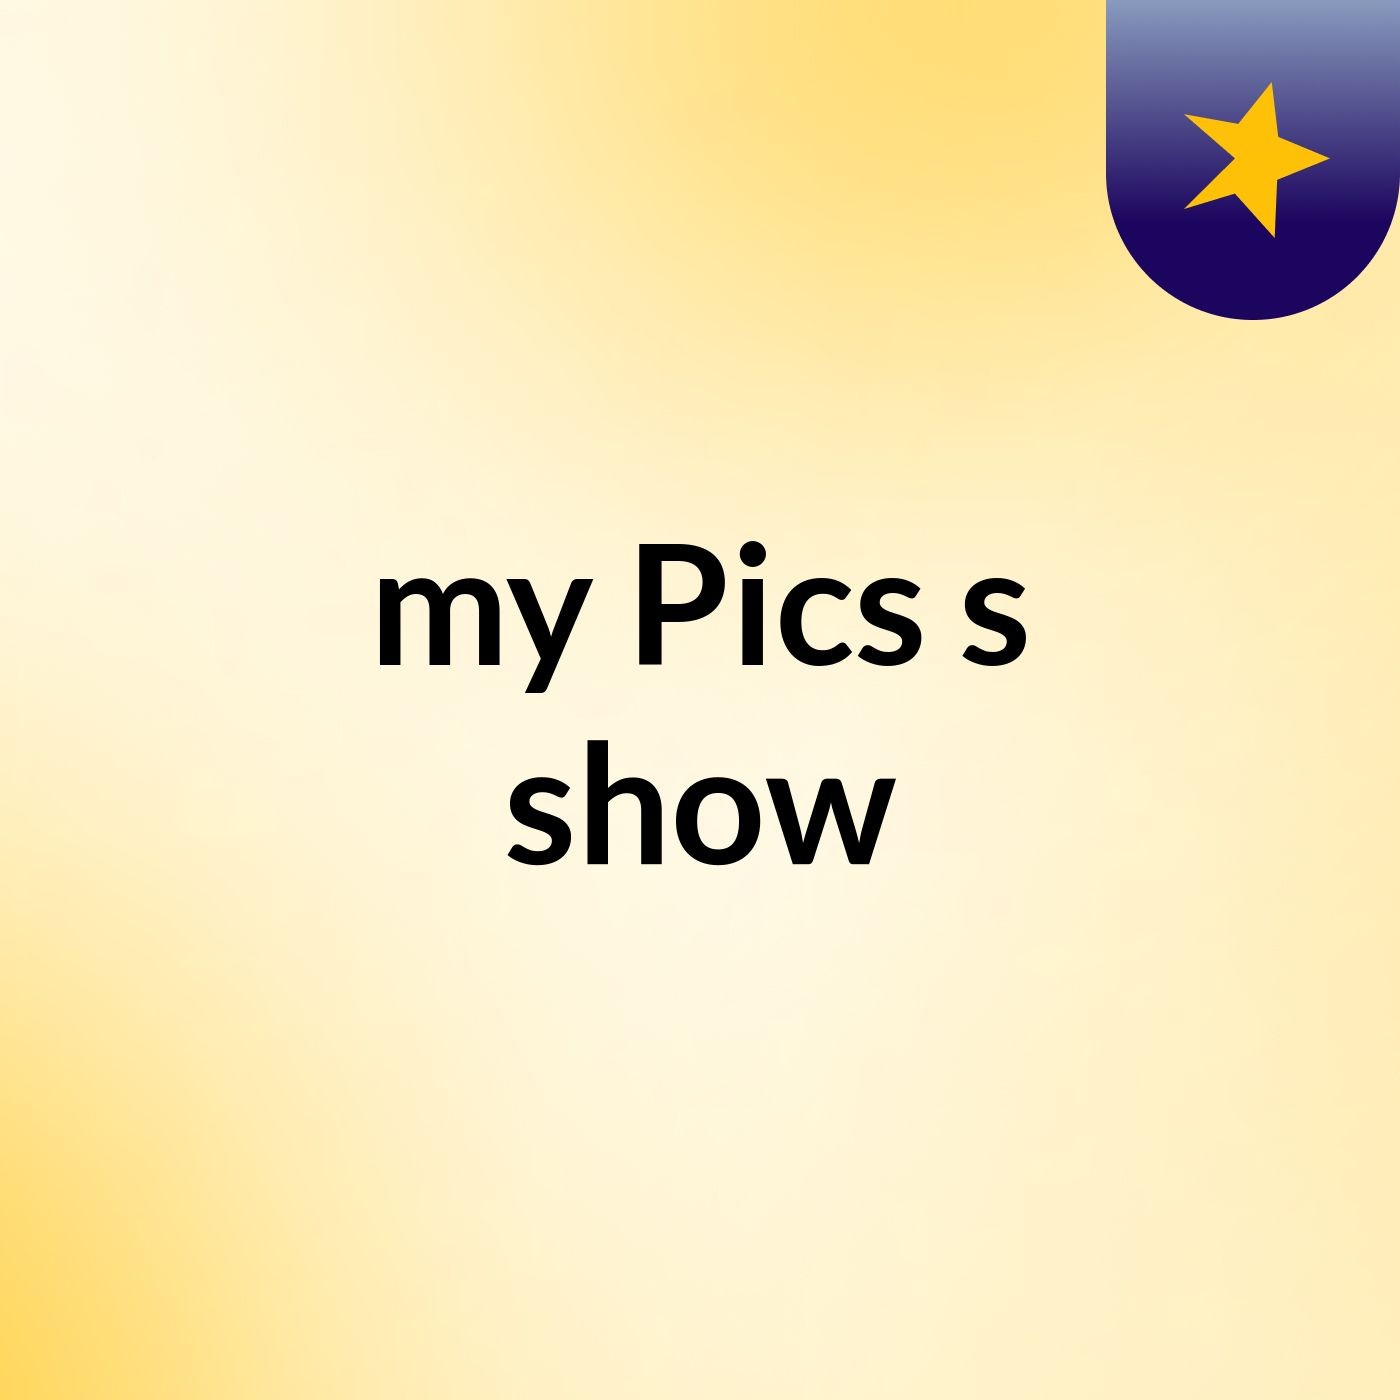 my Pics's show